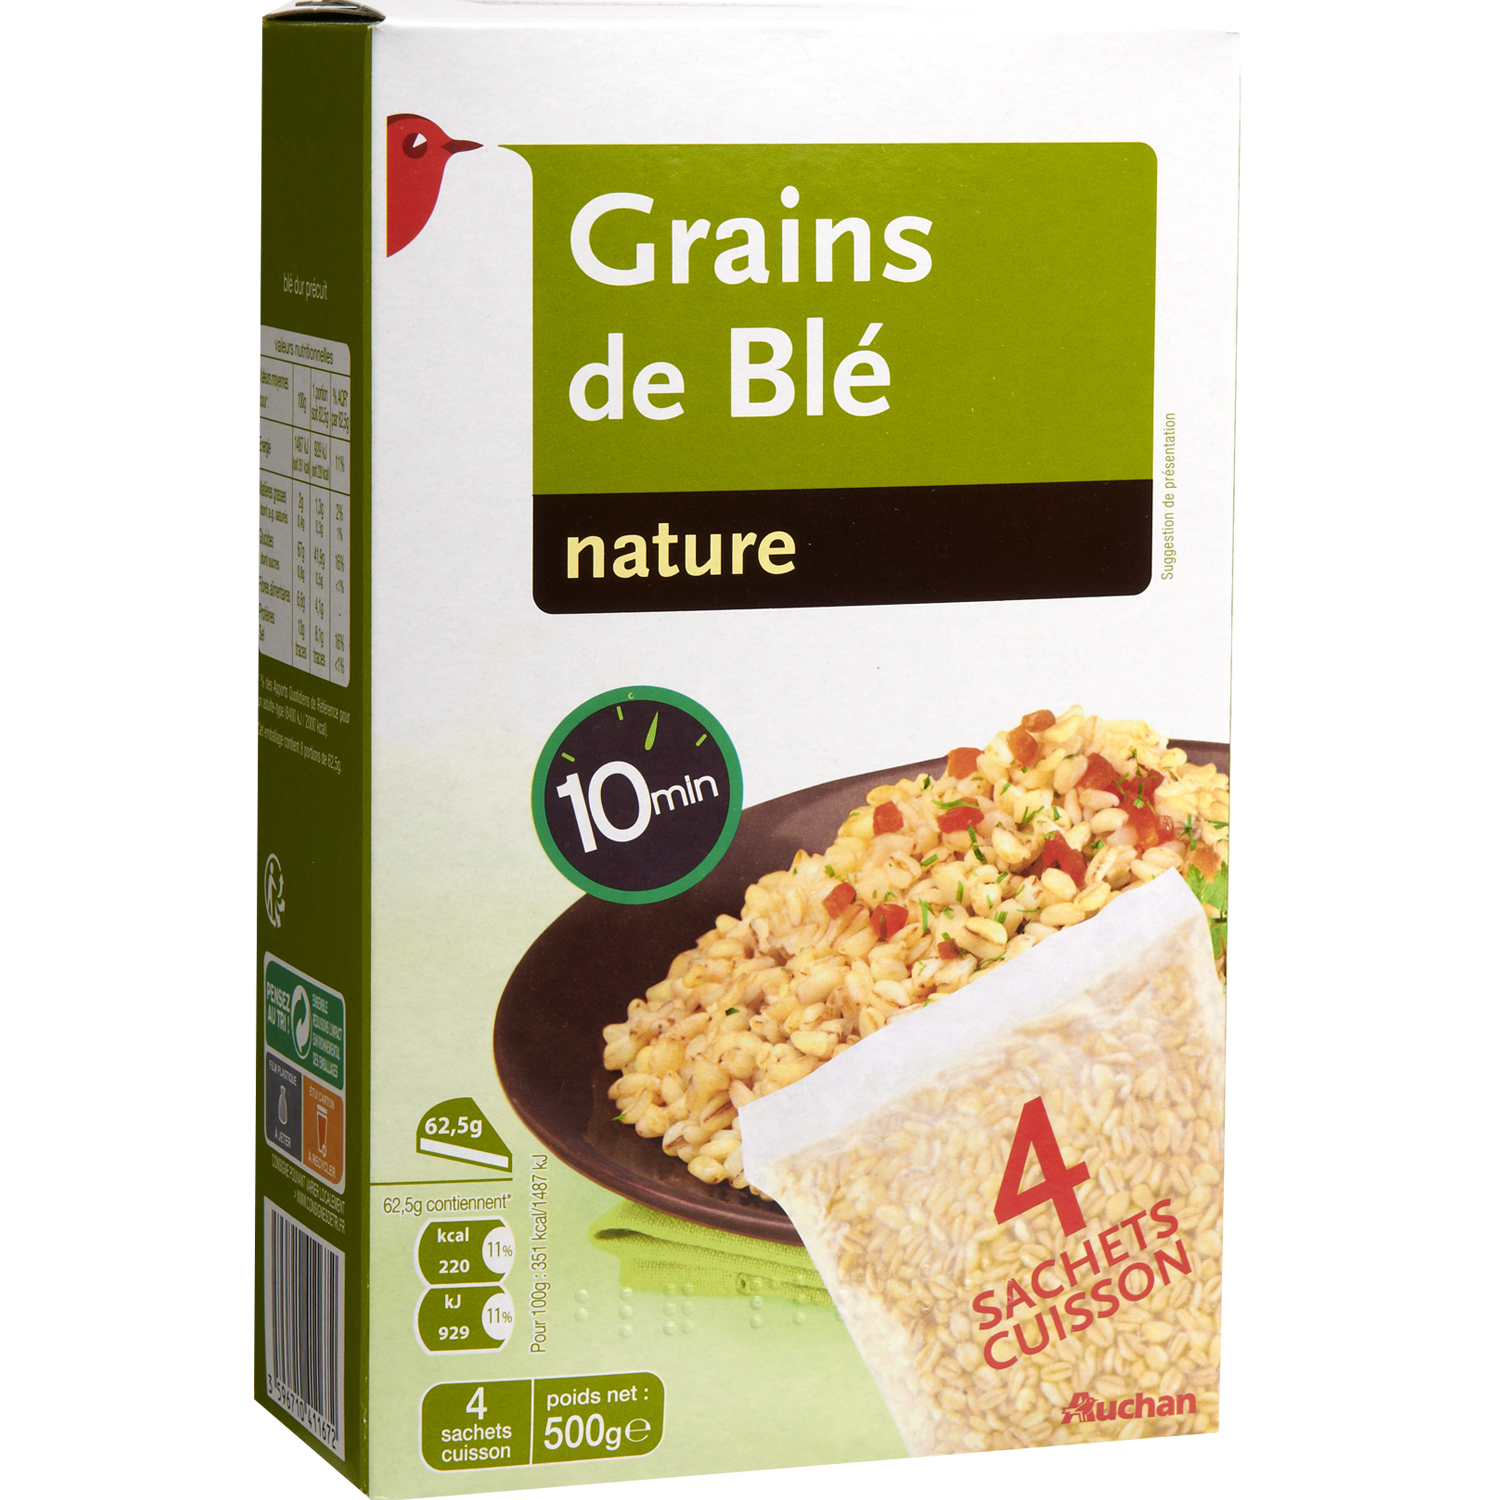 AUCHAN Grains de blé nature 8 portions 500g pas cher 